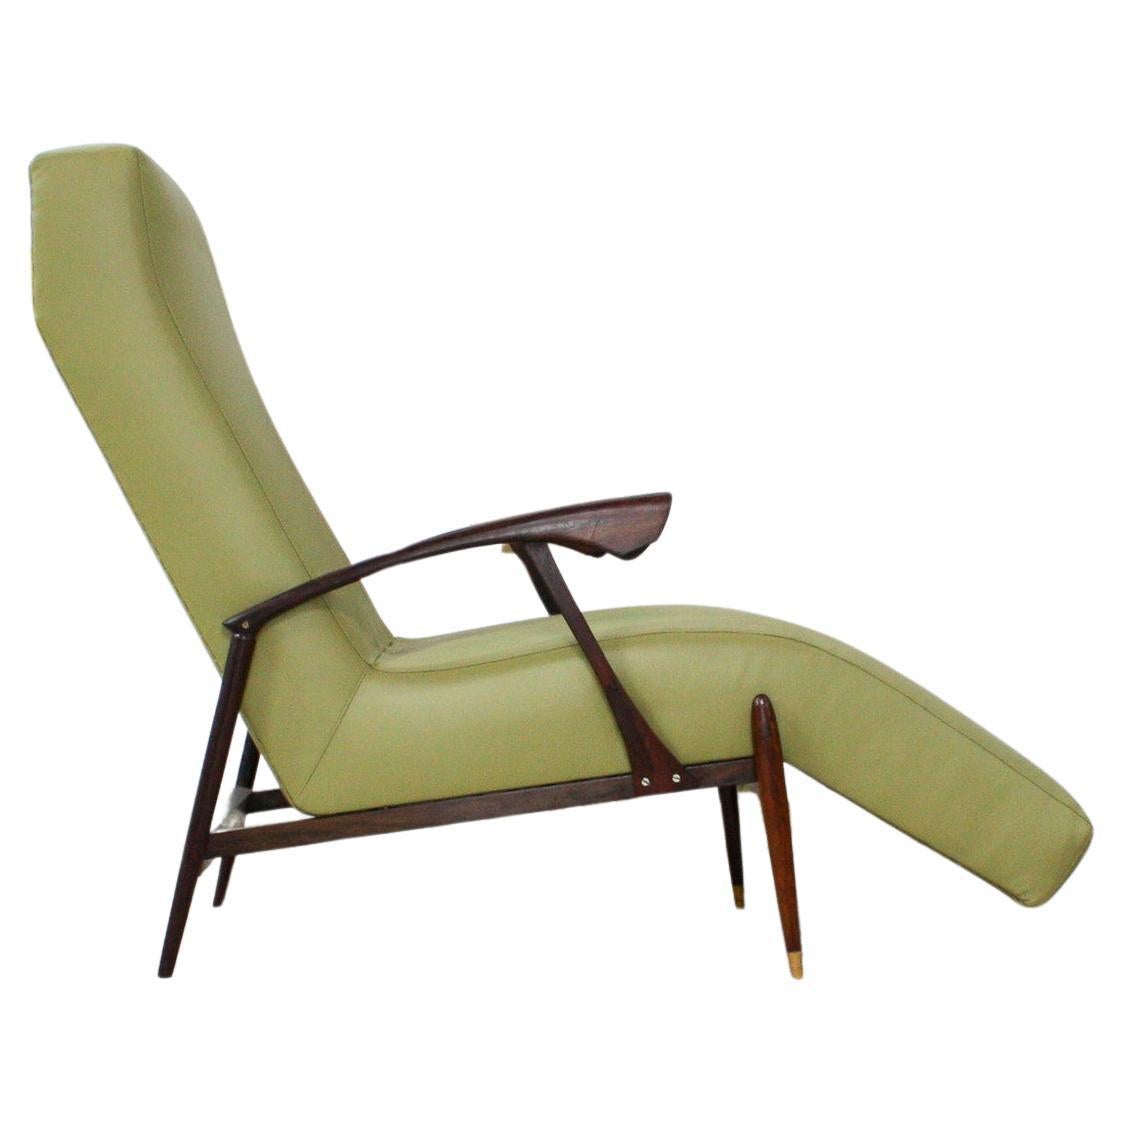 Diese einzigartige Midcentury Modern Chaise Lounge aus den Sechzigern ist der FIND des Jahres und ist nichts weniger als spektakulär.

Die skulpturale Chaiselongue verfügt über einen Sockel aus massivem brasilianischem Rosenholz (bekannt als